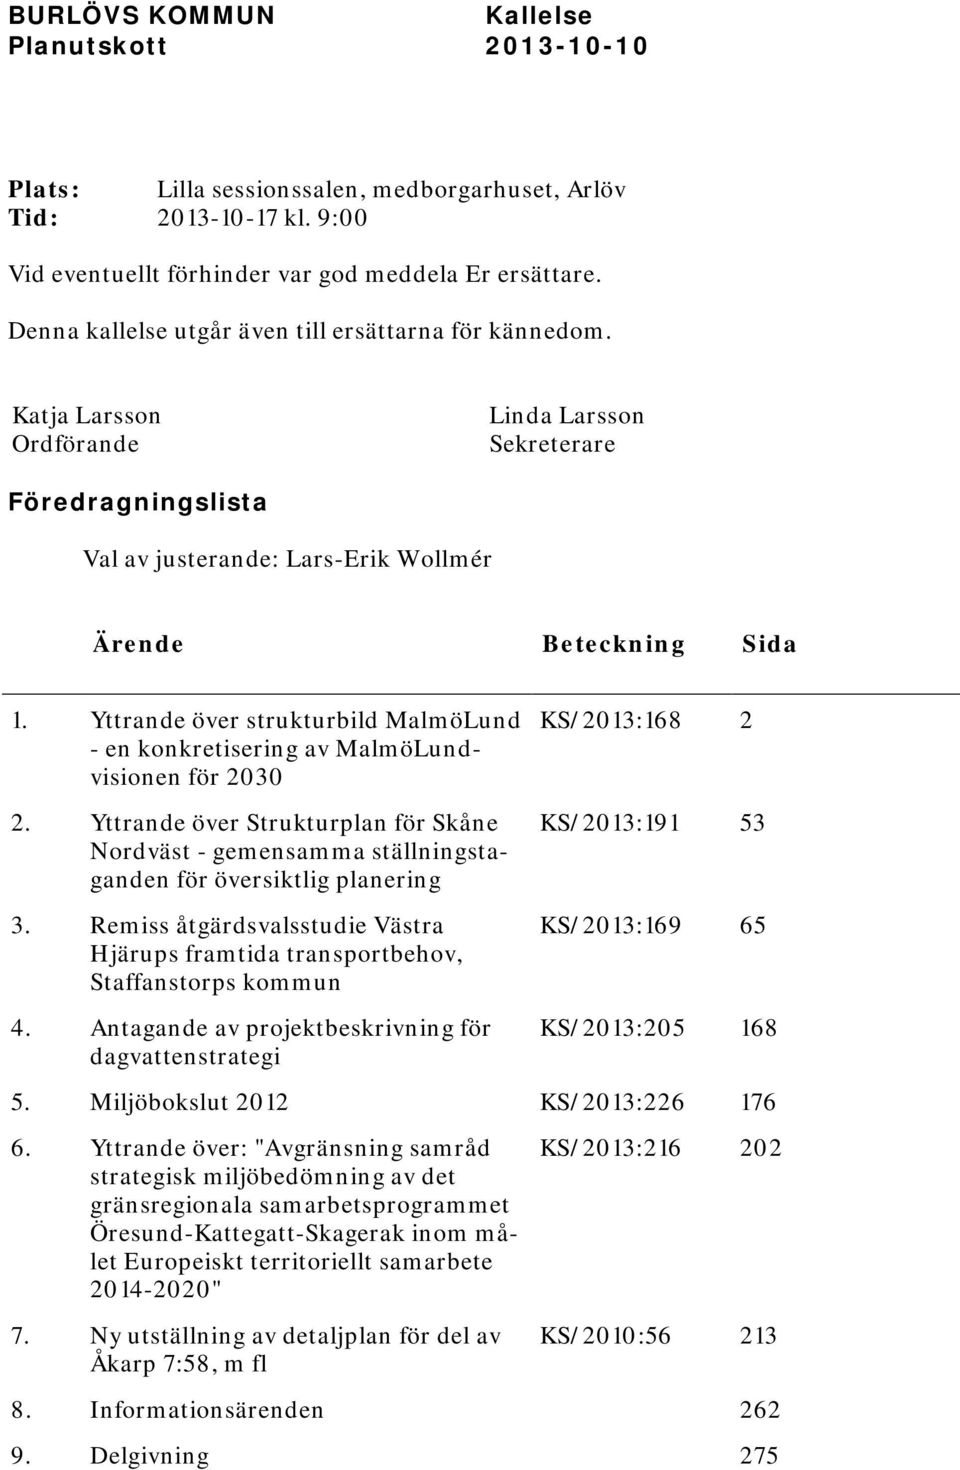 Yttrande över strukturbild MalmöLund - en konkretisering av MalmöLundvisionen för 2030 2. Yttrande över Strukturplan för Skåne Nordväst - gemensamma ställningstaganden för översiktlig planering 3.